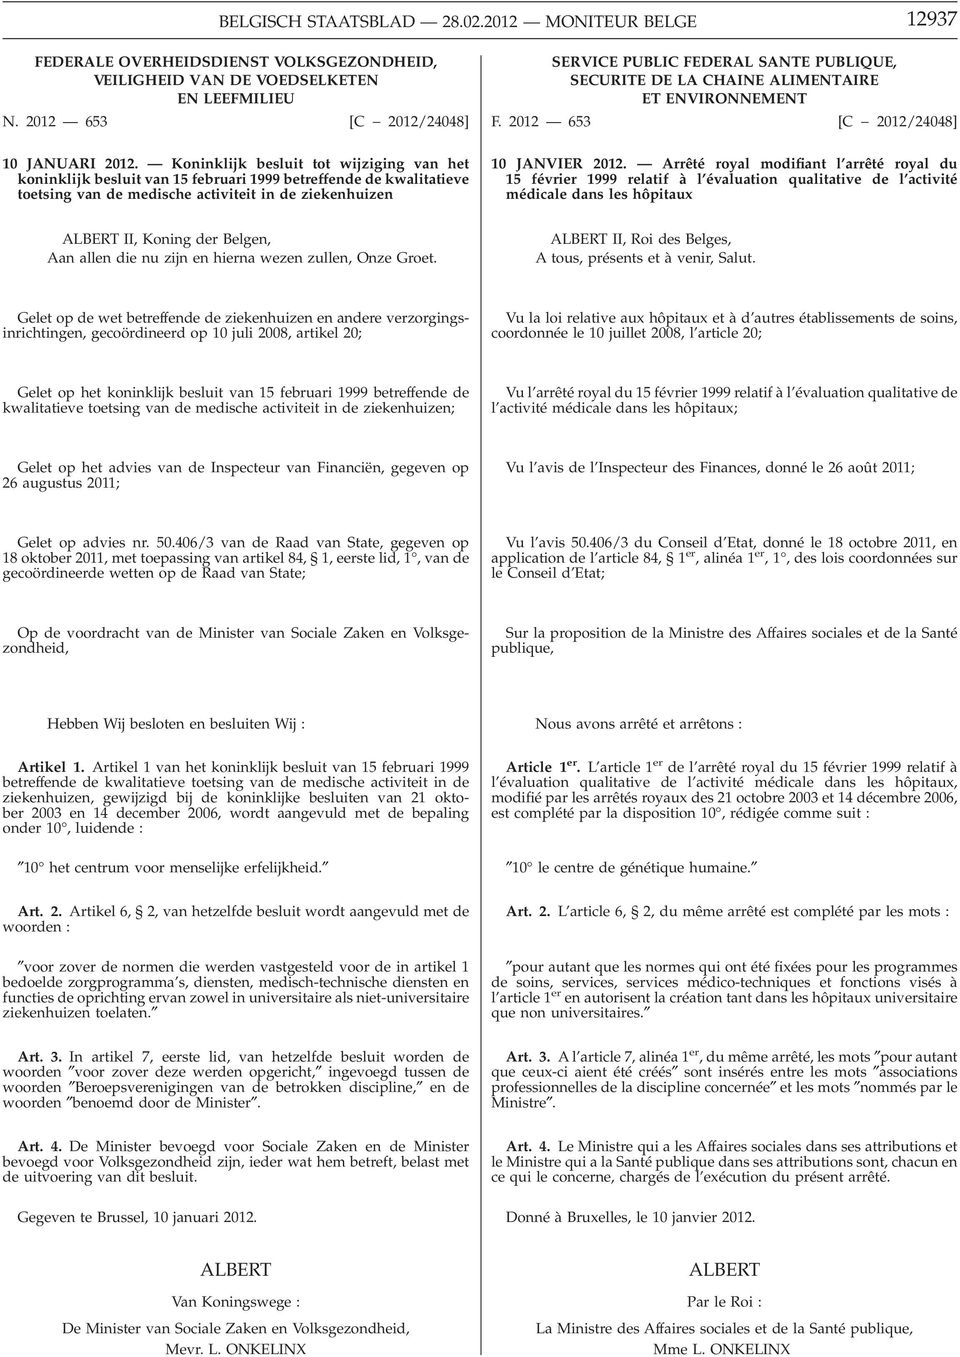 PUBLIQUE, SECURITE DE LA CHAINE ALIMENTAIRE ET ENVIRONNEMENT F. 2012 653 [C 2012/24048] 10 JANVIER 2012.